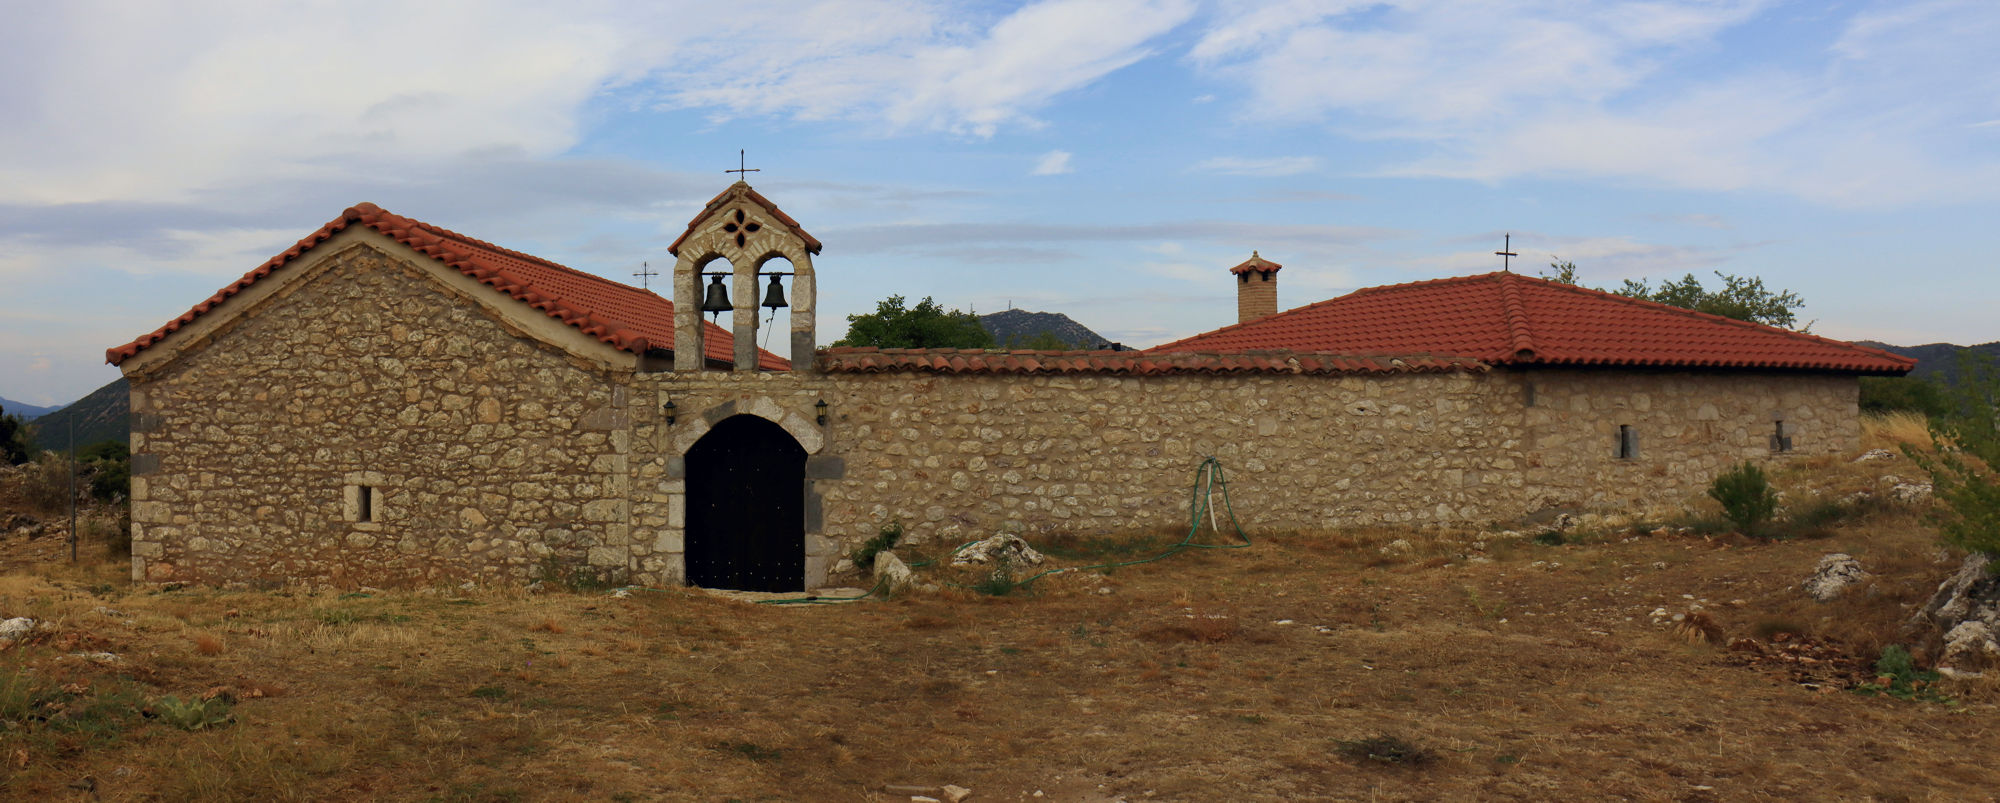 Μοναστήρια του Μαινάλου: Μονή Αγίων Αποστόλων Ζυγοβιστίου